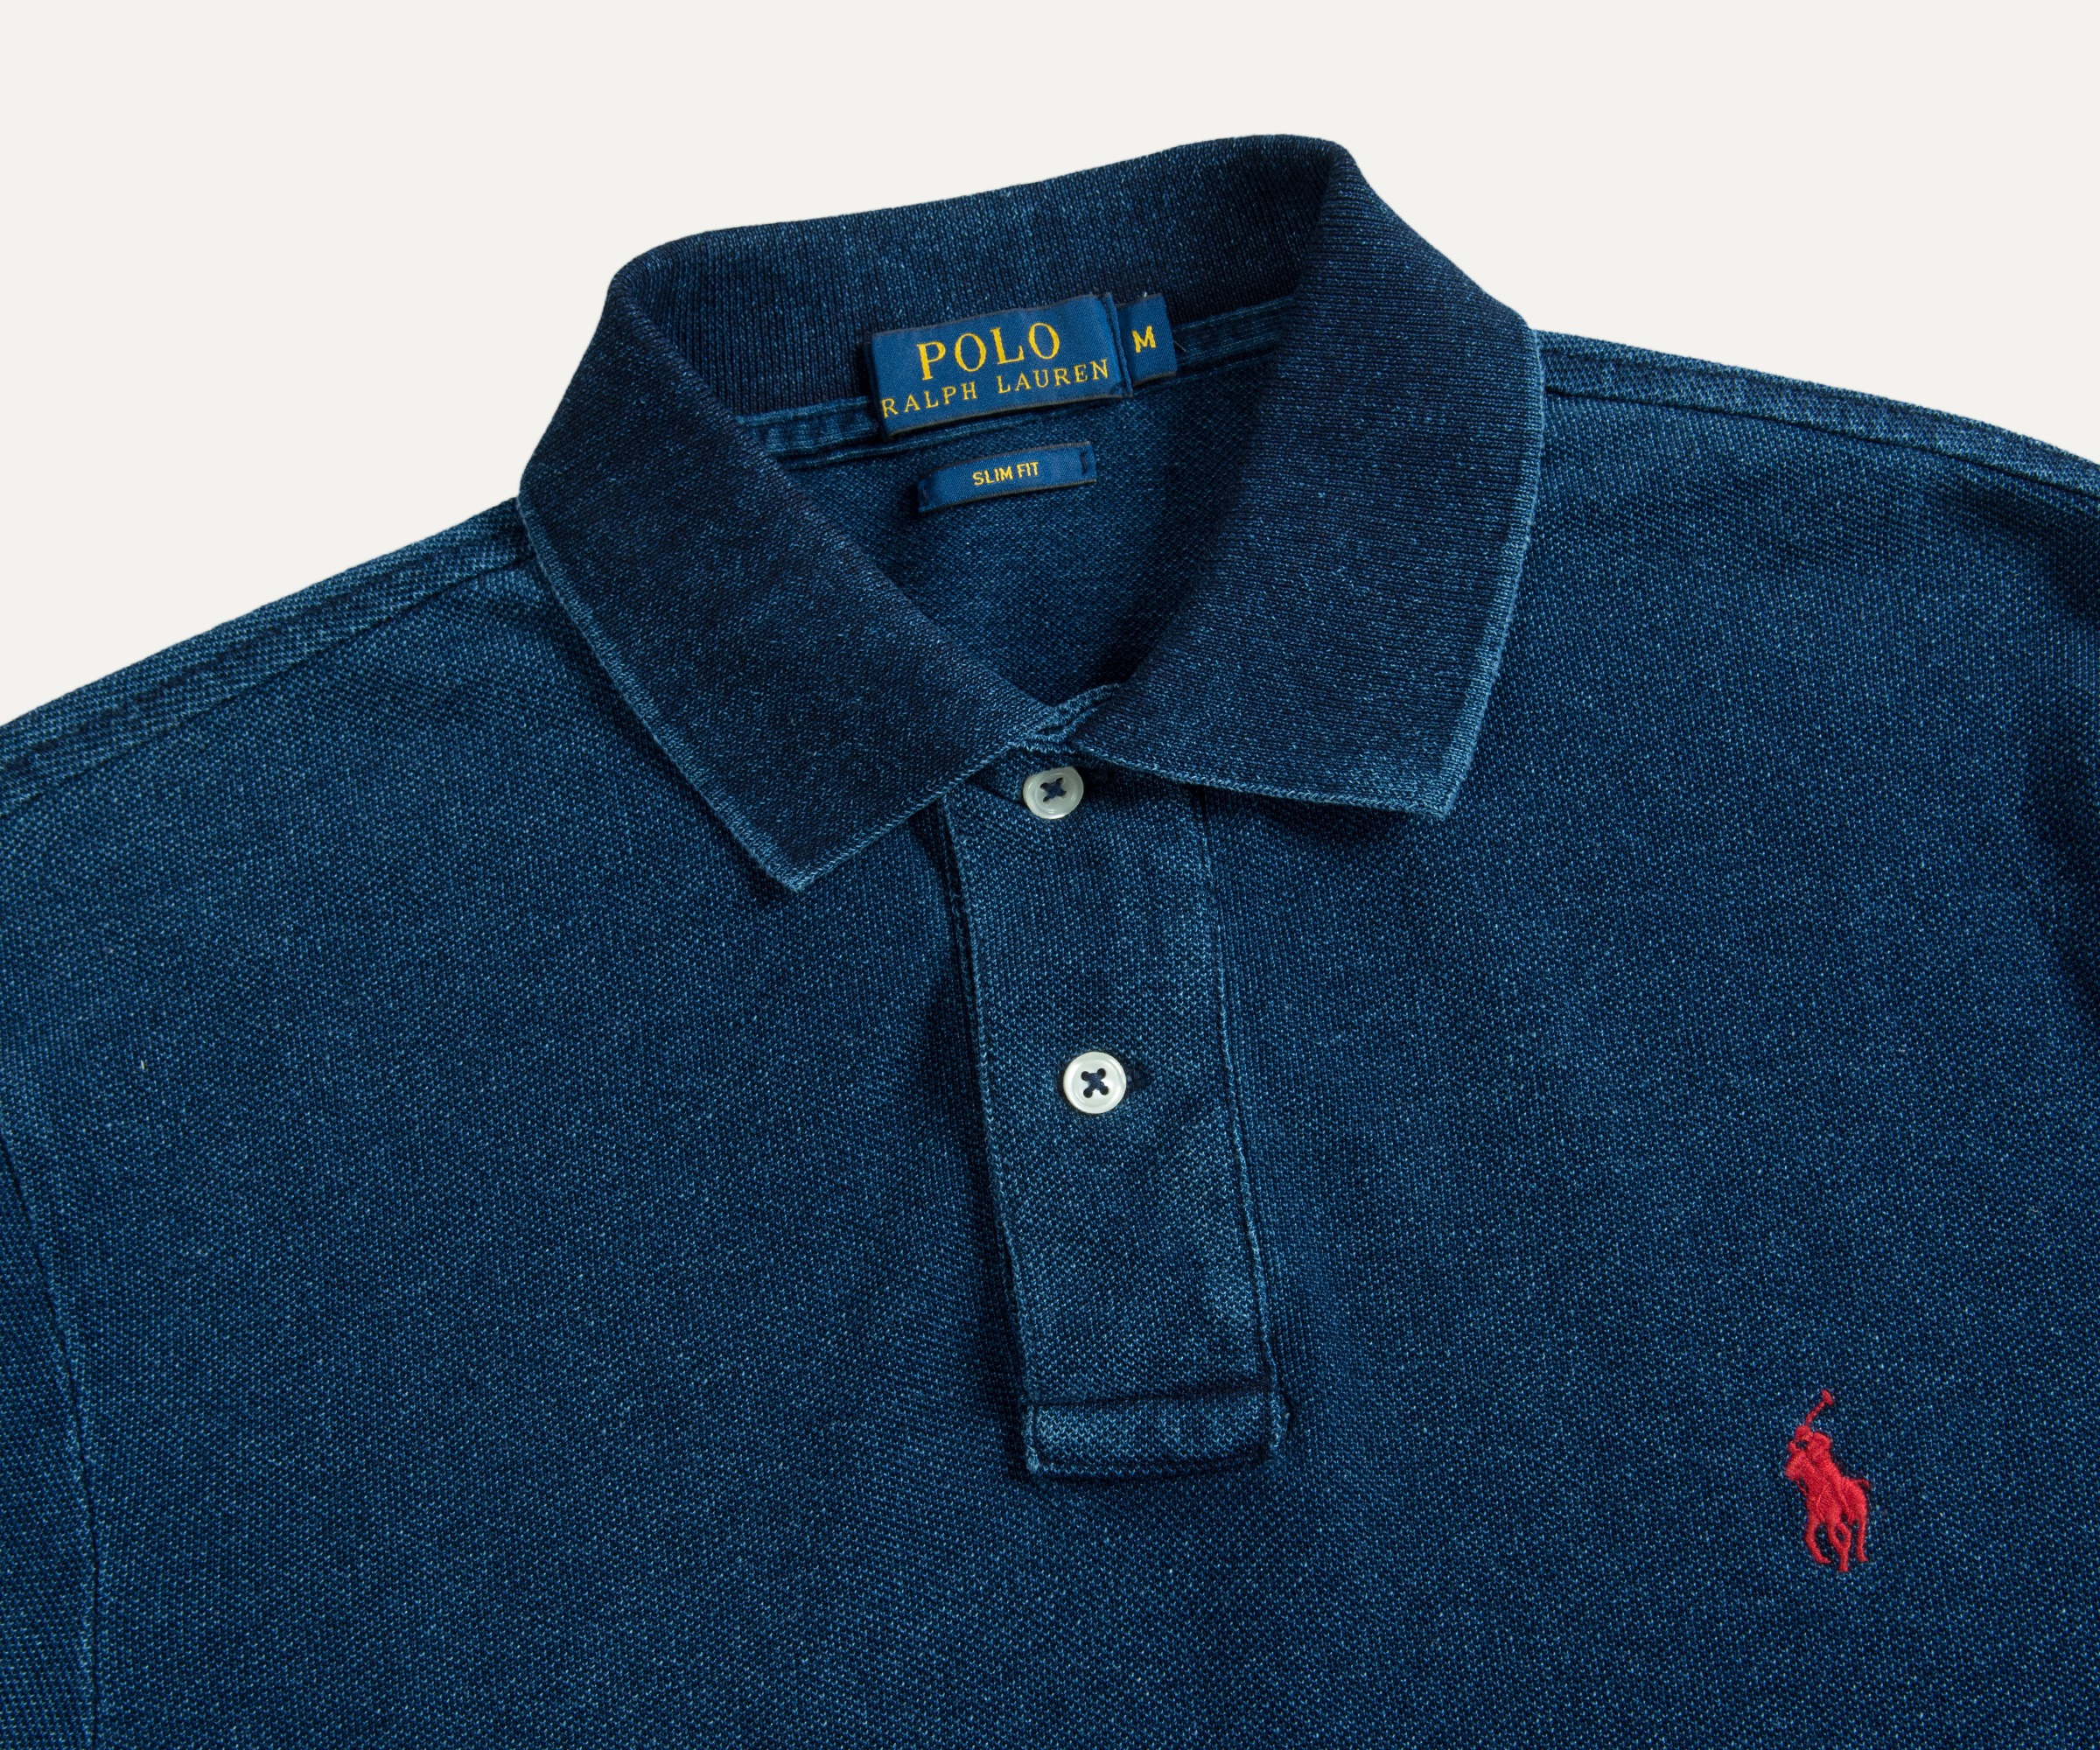 Polo Ralph Lauren Slim Fit Denim 2-Button Polo Dark Indigo